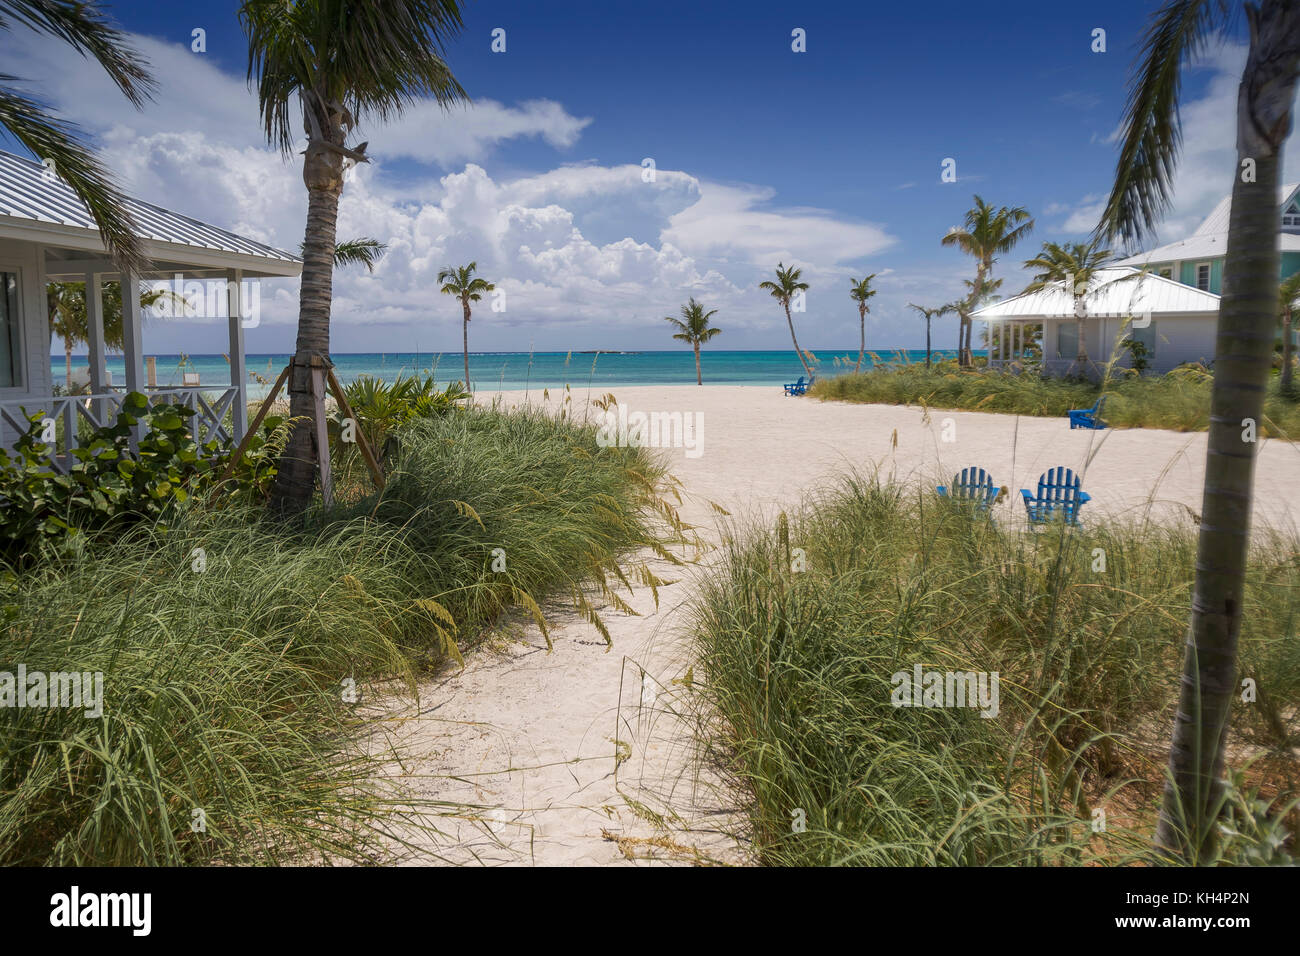 Chub Cay, Bahamas July 2017 Stock Photo